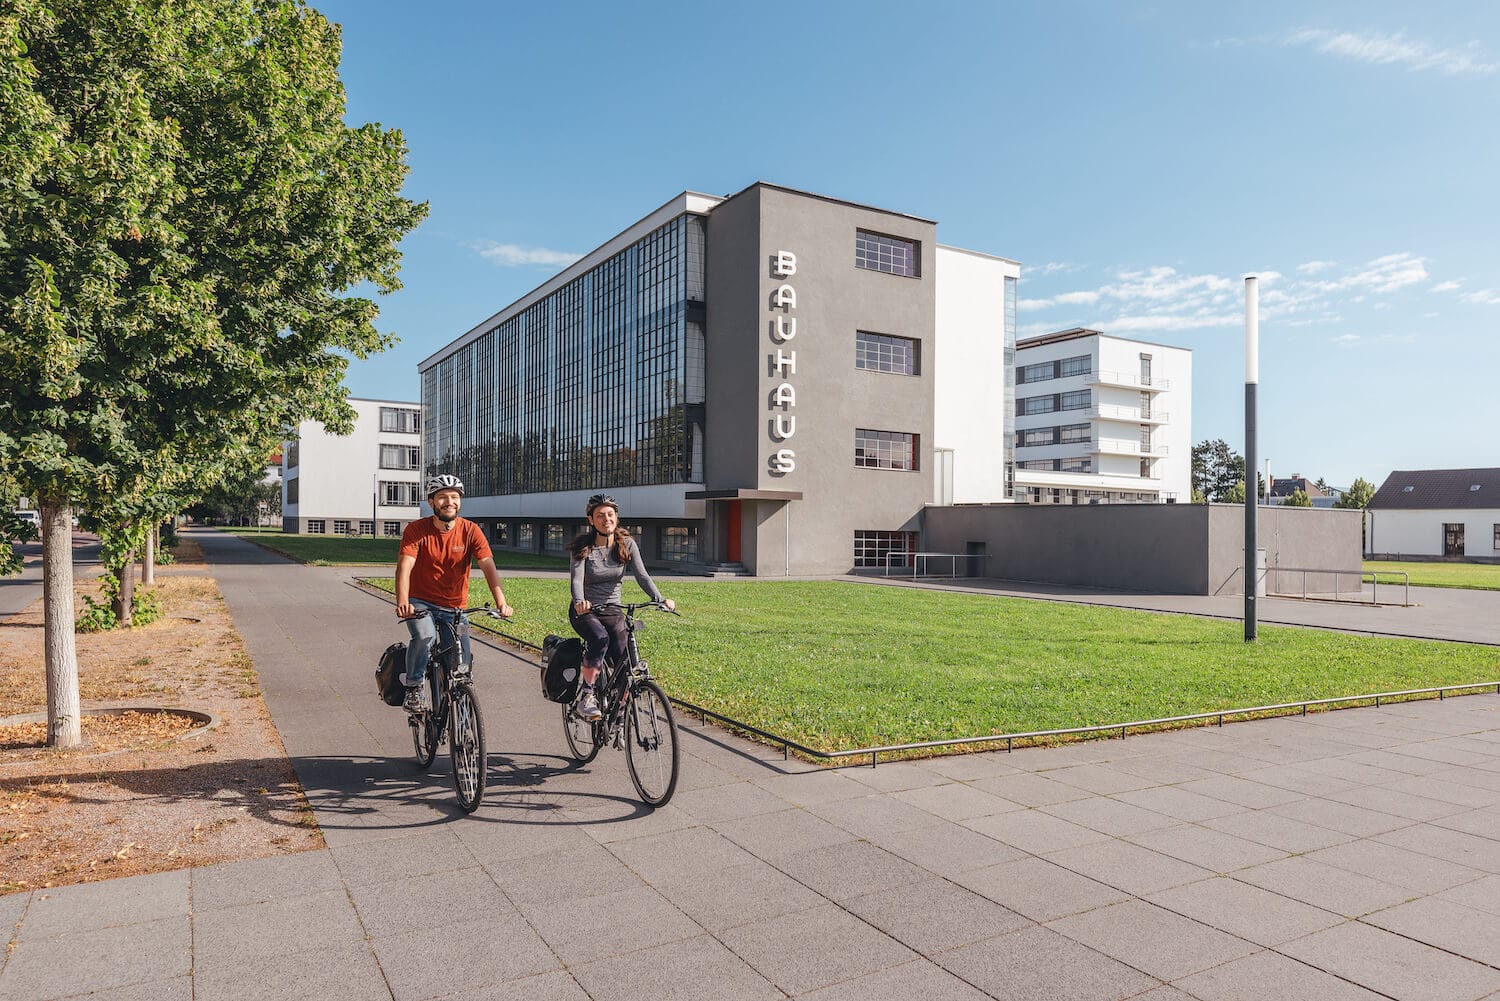 De Elbe fietsroute loopt ook langs de iconische Bauhaus gebouwen.